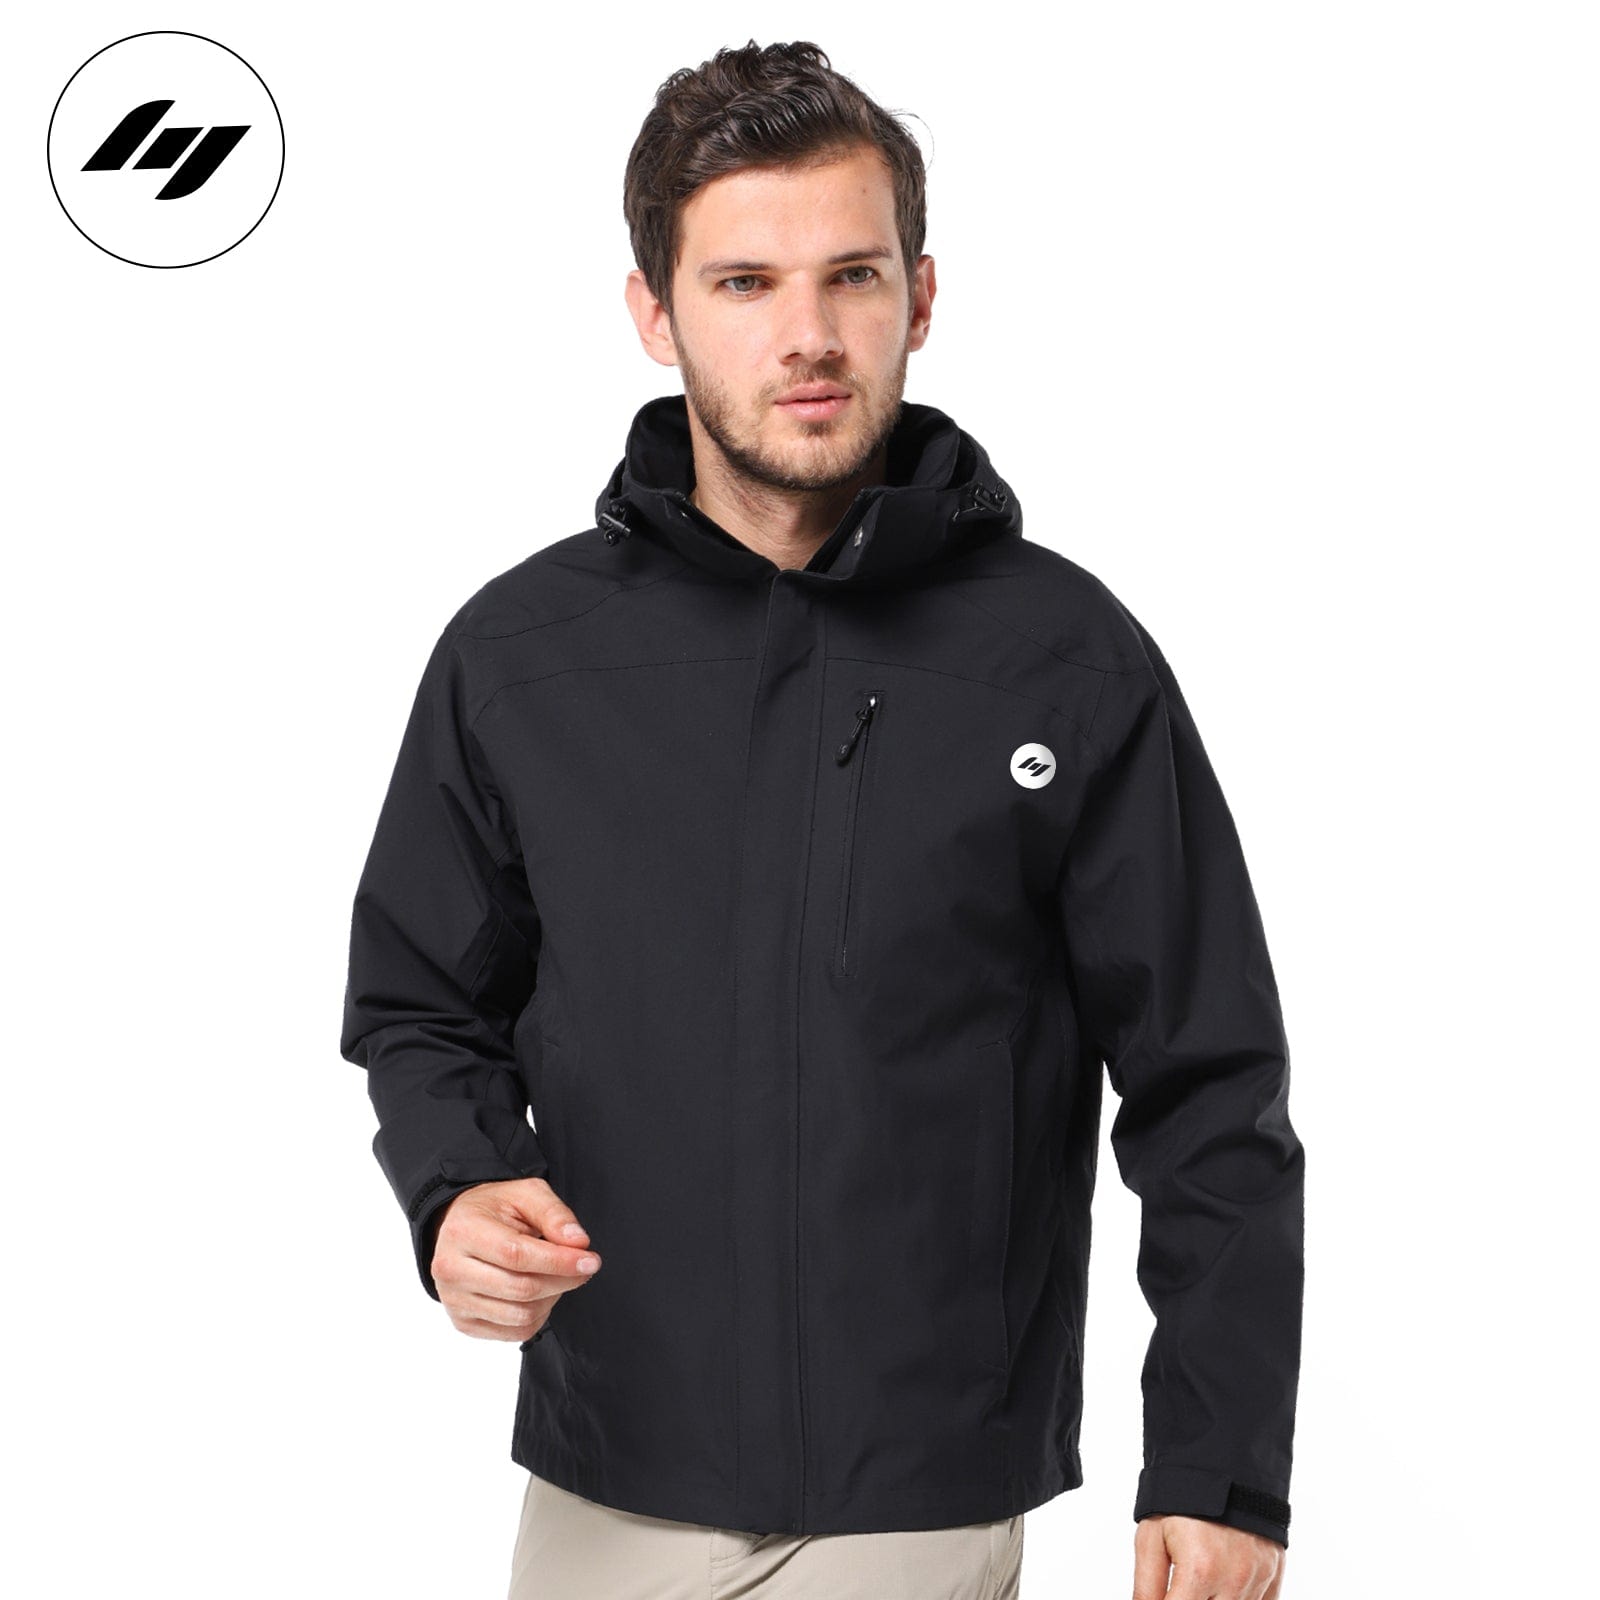 Men's Lightweight Waterproof Rain Jacket with Hood